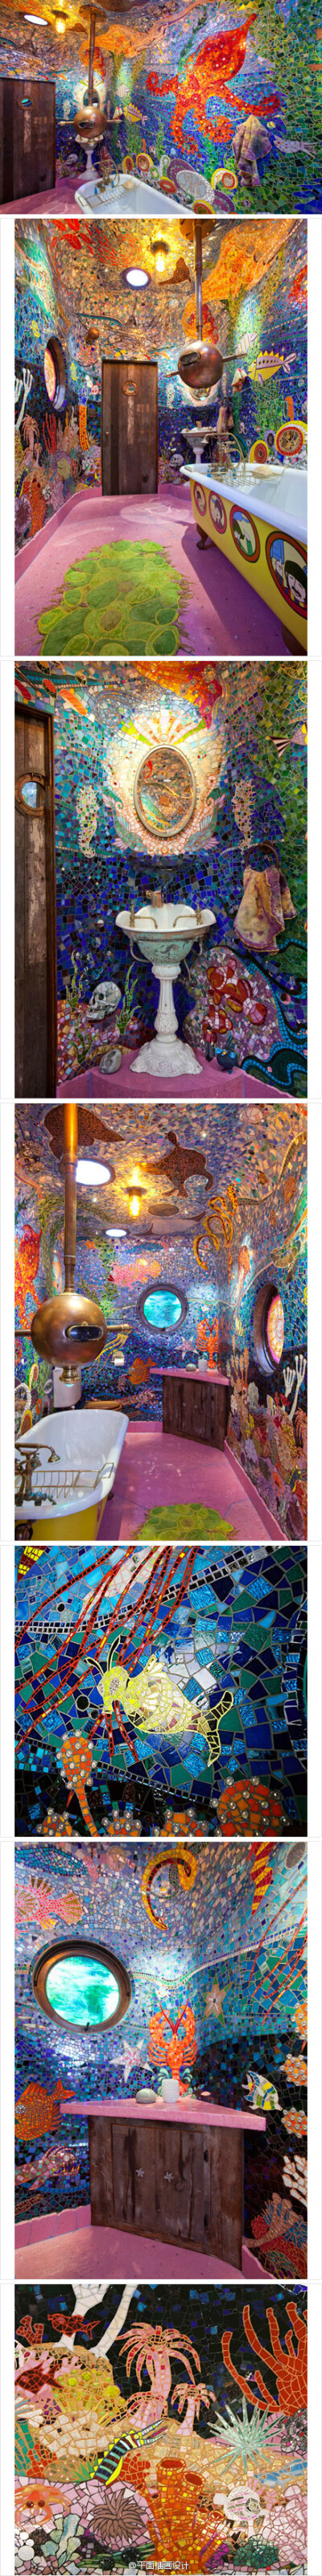 位于巴西的“Gaudi’s Beach House”高迪海滨别墅，由一群自由的疯狂的艺术家自由发挥创作。五彩马赛克将每个浴室装饰成一副副梦幻的蓝色海底世界，蓝色让人安静，海底世界让人迷幻，沐浴其中，如沐清爽海风，舒畅。…